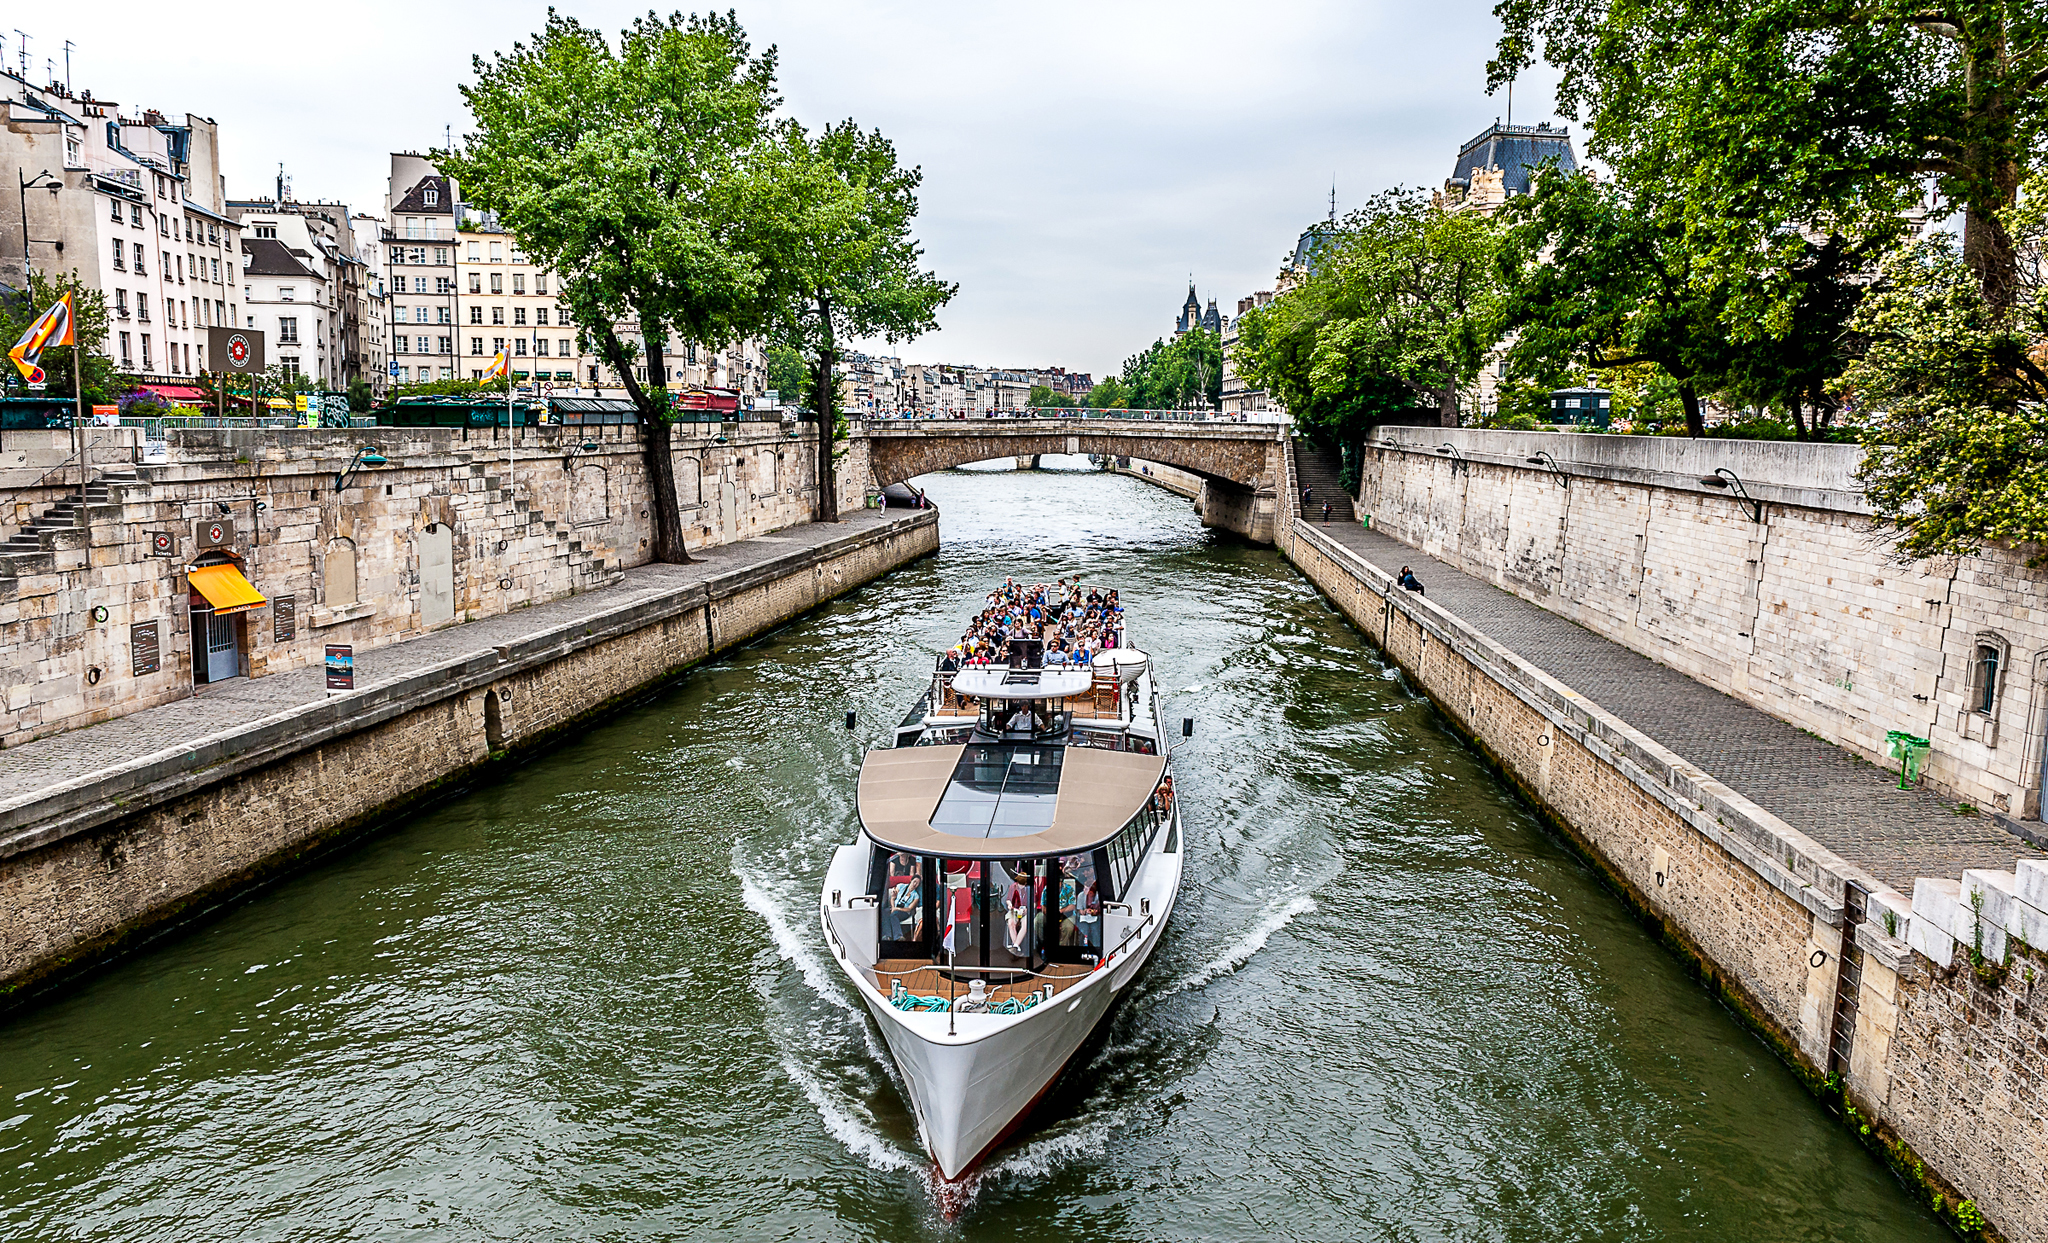 Le seine. Река сена во Франции. Река сена в Париже. Сена (река) реки Франции. Река сена во Франции фото.